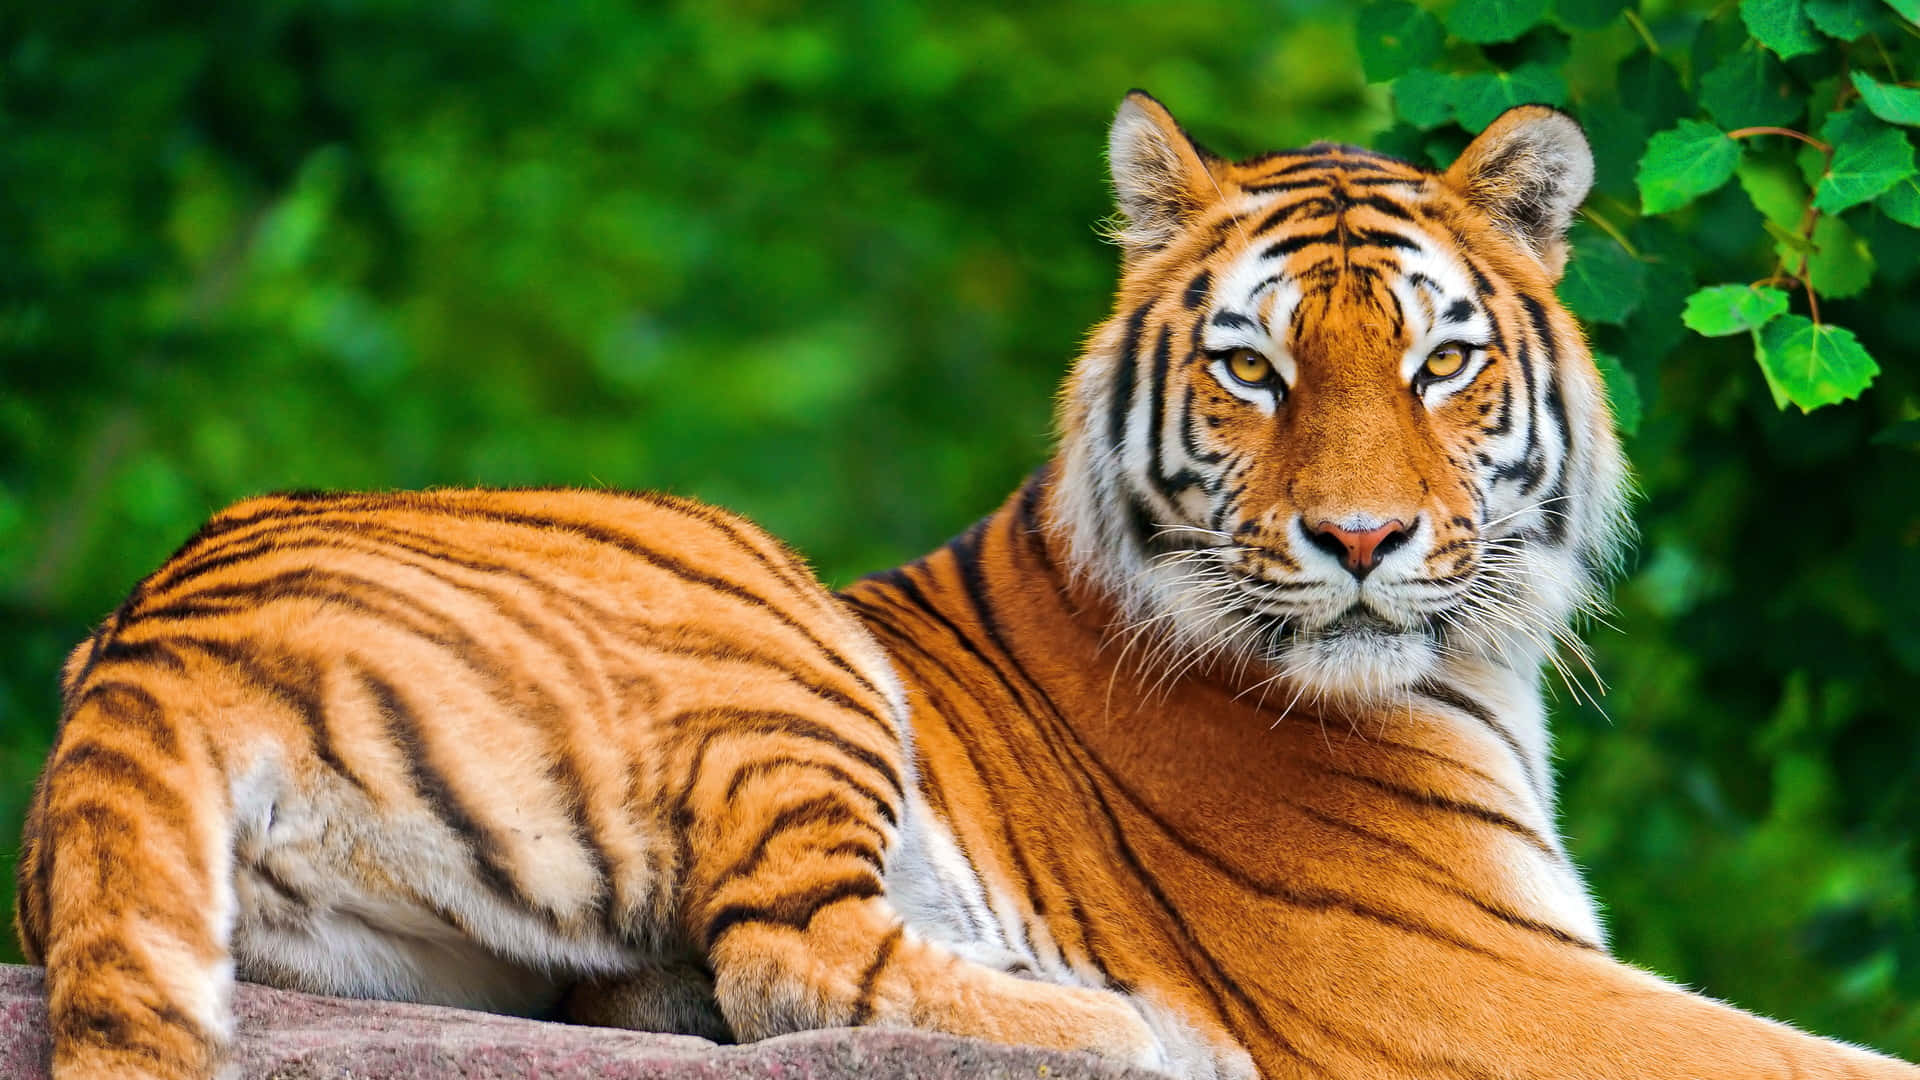 Imagende Animales Salvajes: Tigre Con Hojas